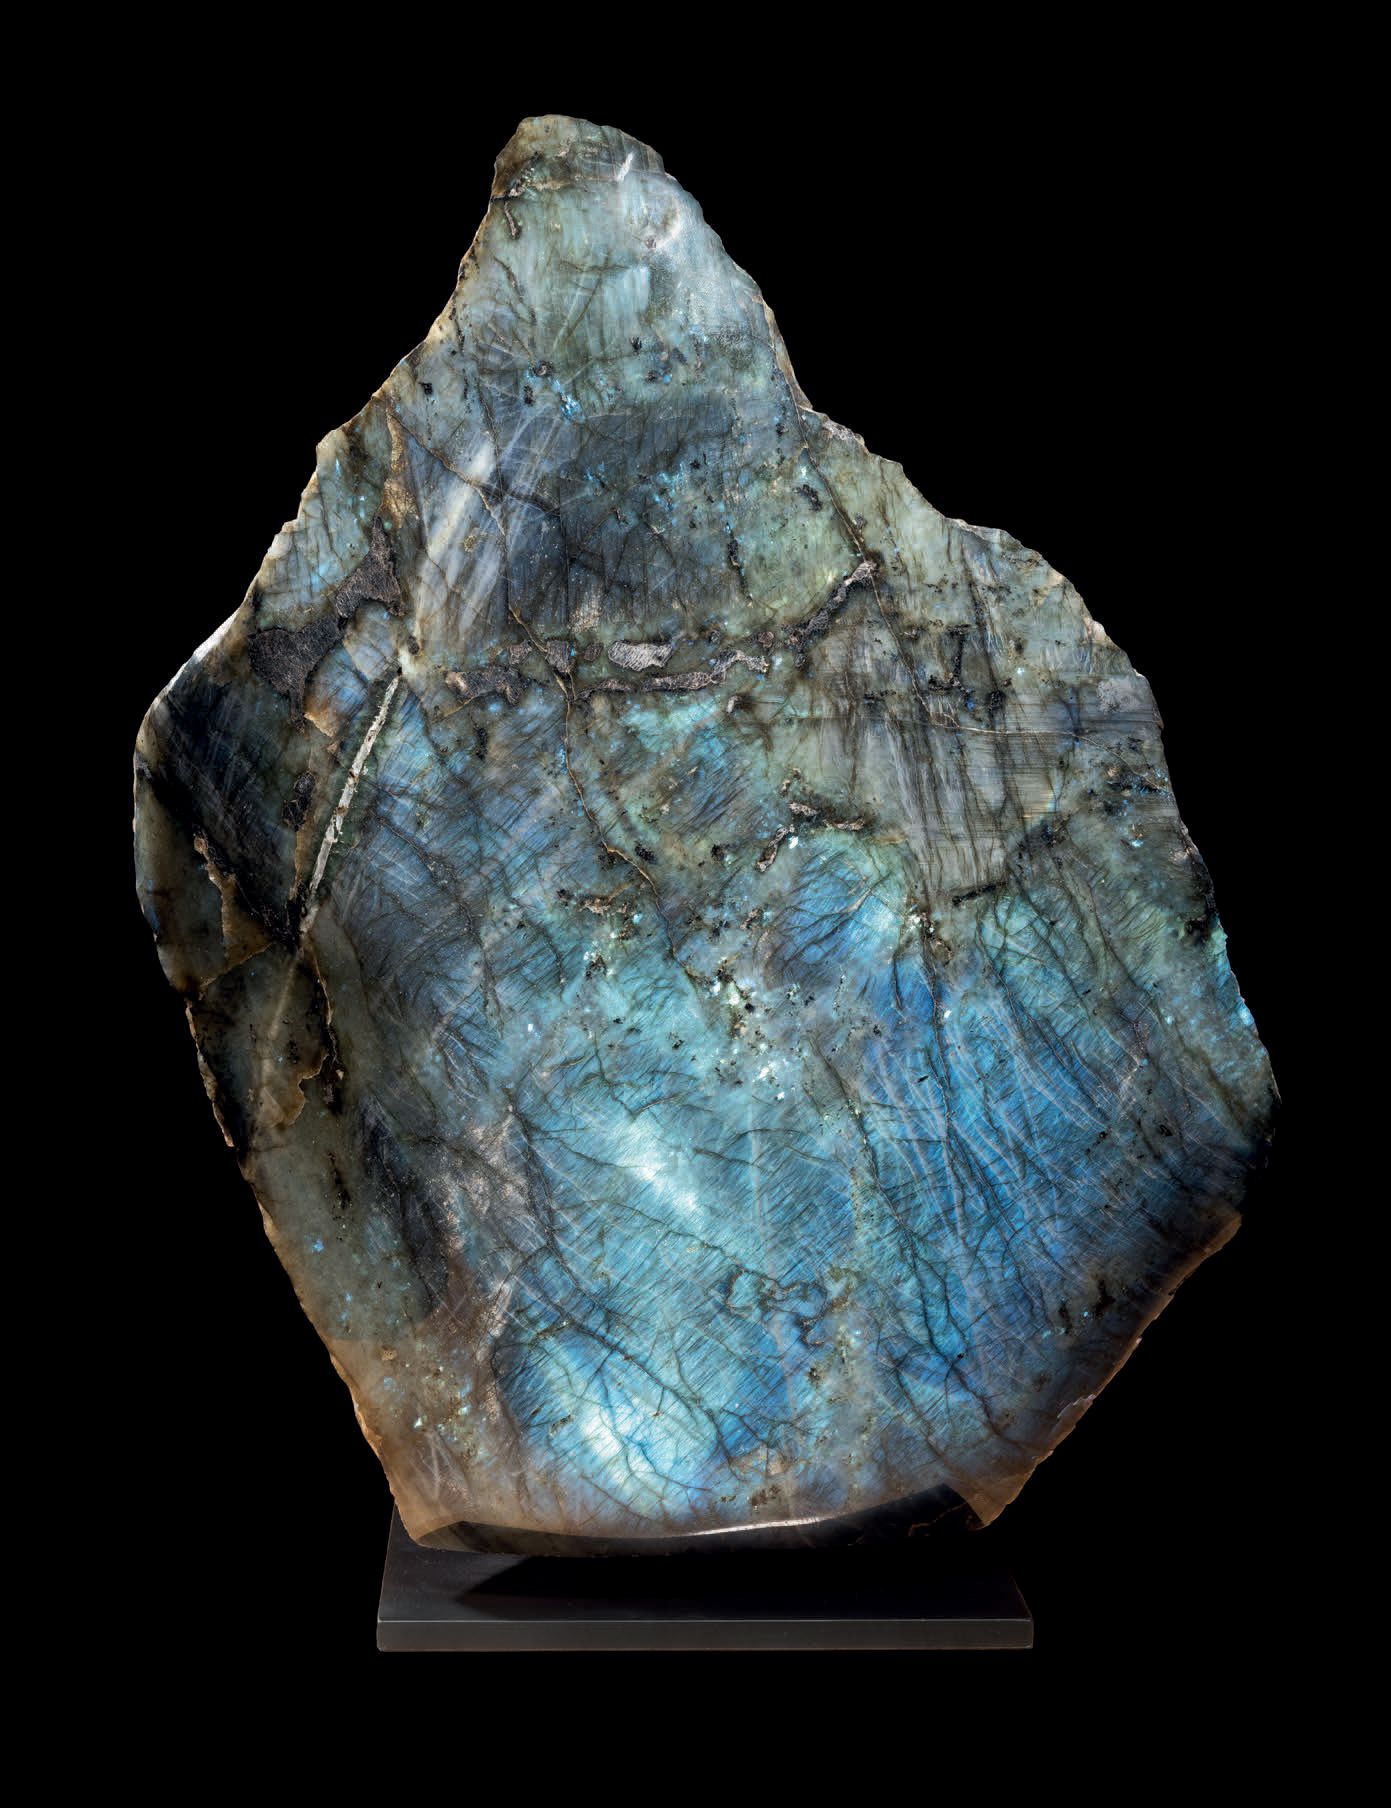 Null 镶嵌在SOCLE上的红榴石块
马达加斯加
高48厘米 - 宽40厘米 - 深17厘米
全身抛光的电蓝色光泽